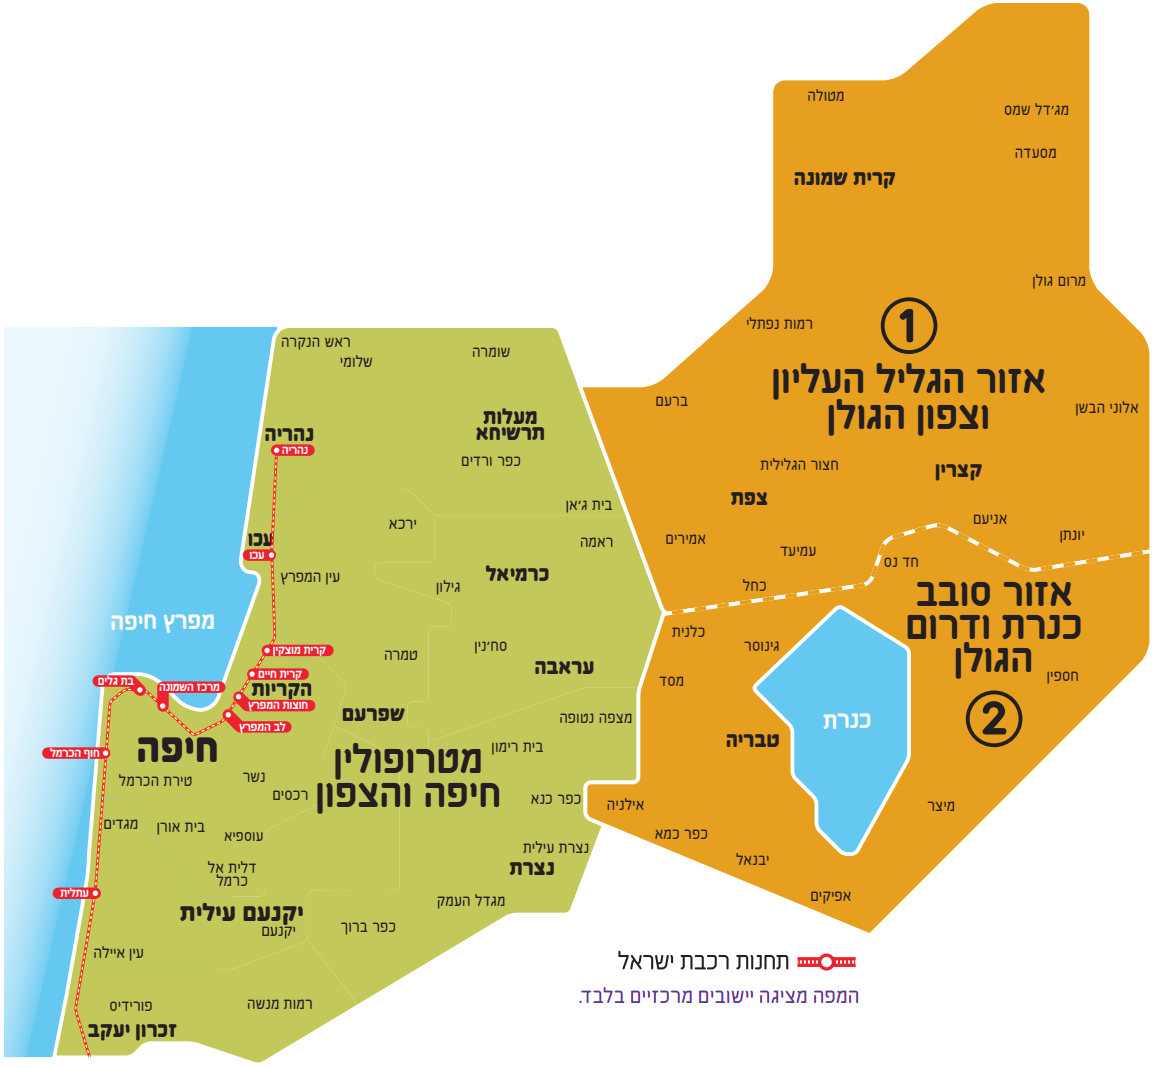 מפת אזור הגליל המזרחי, הגולן וסובב כנרת (עם מטרופולין חיפה והצפון)